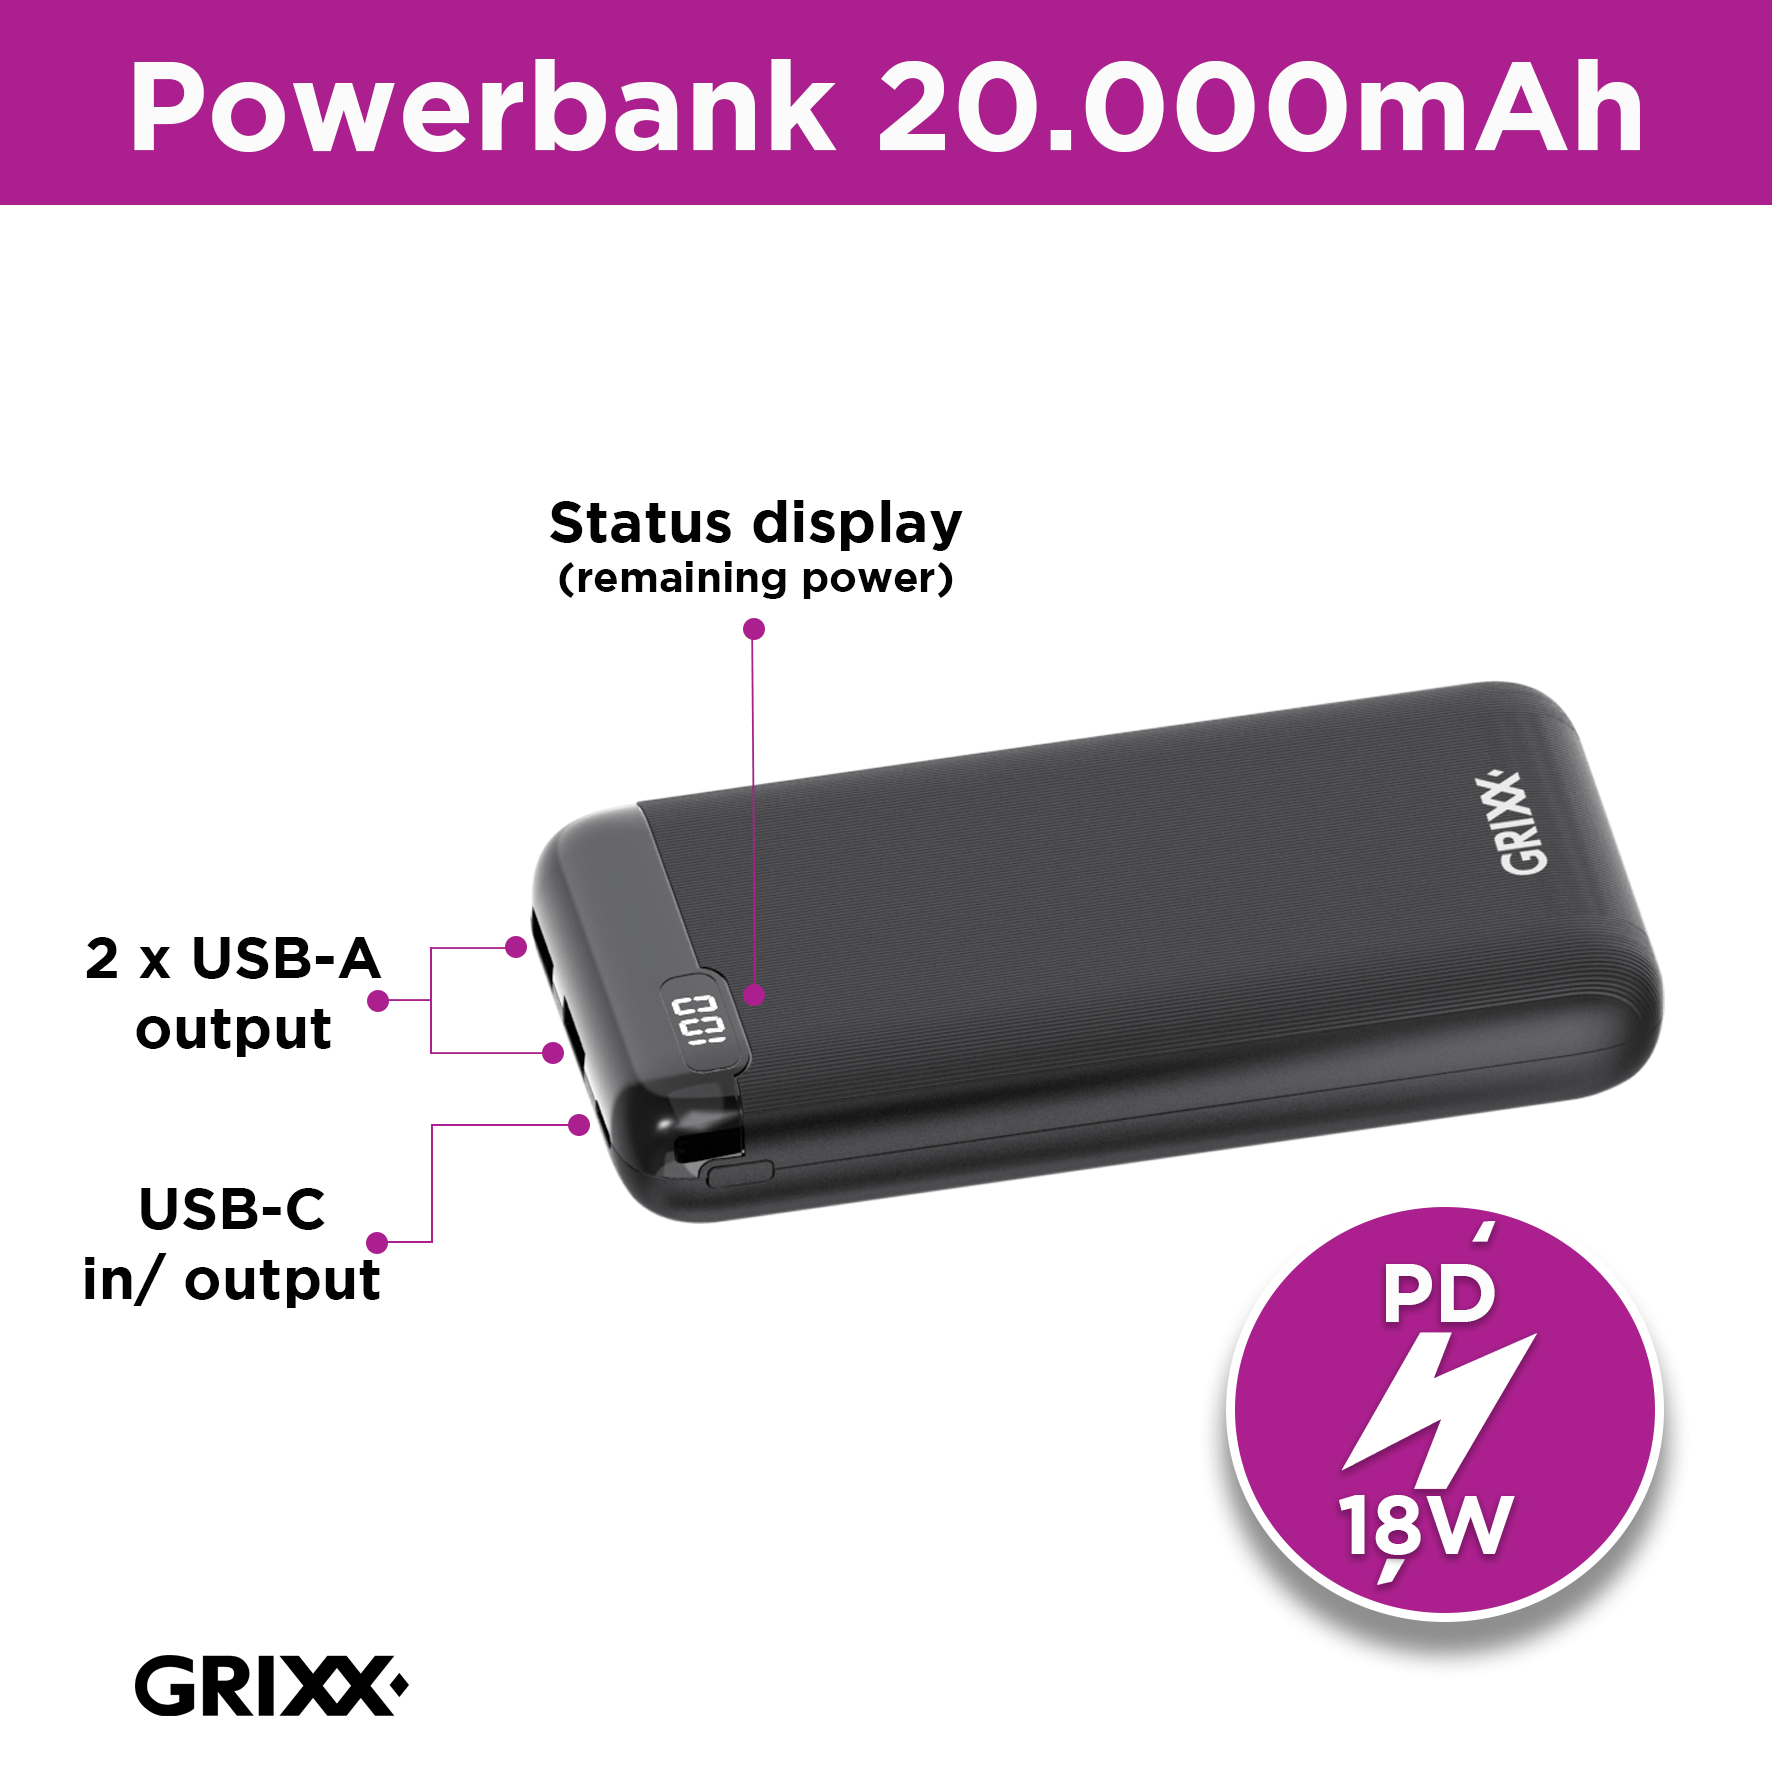 Grixx-Powerbank-optimum-20.000mAh-18WPD_specs.png